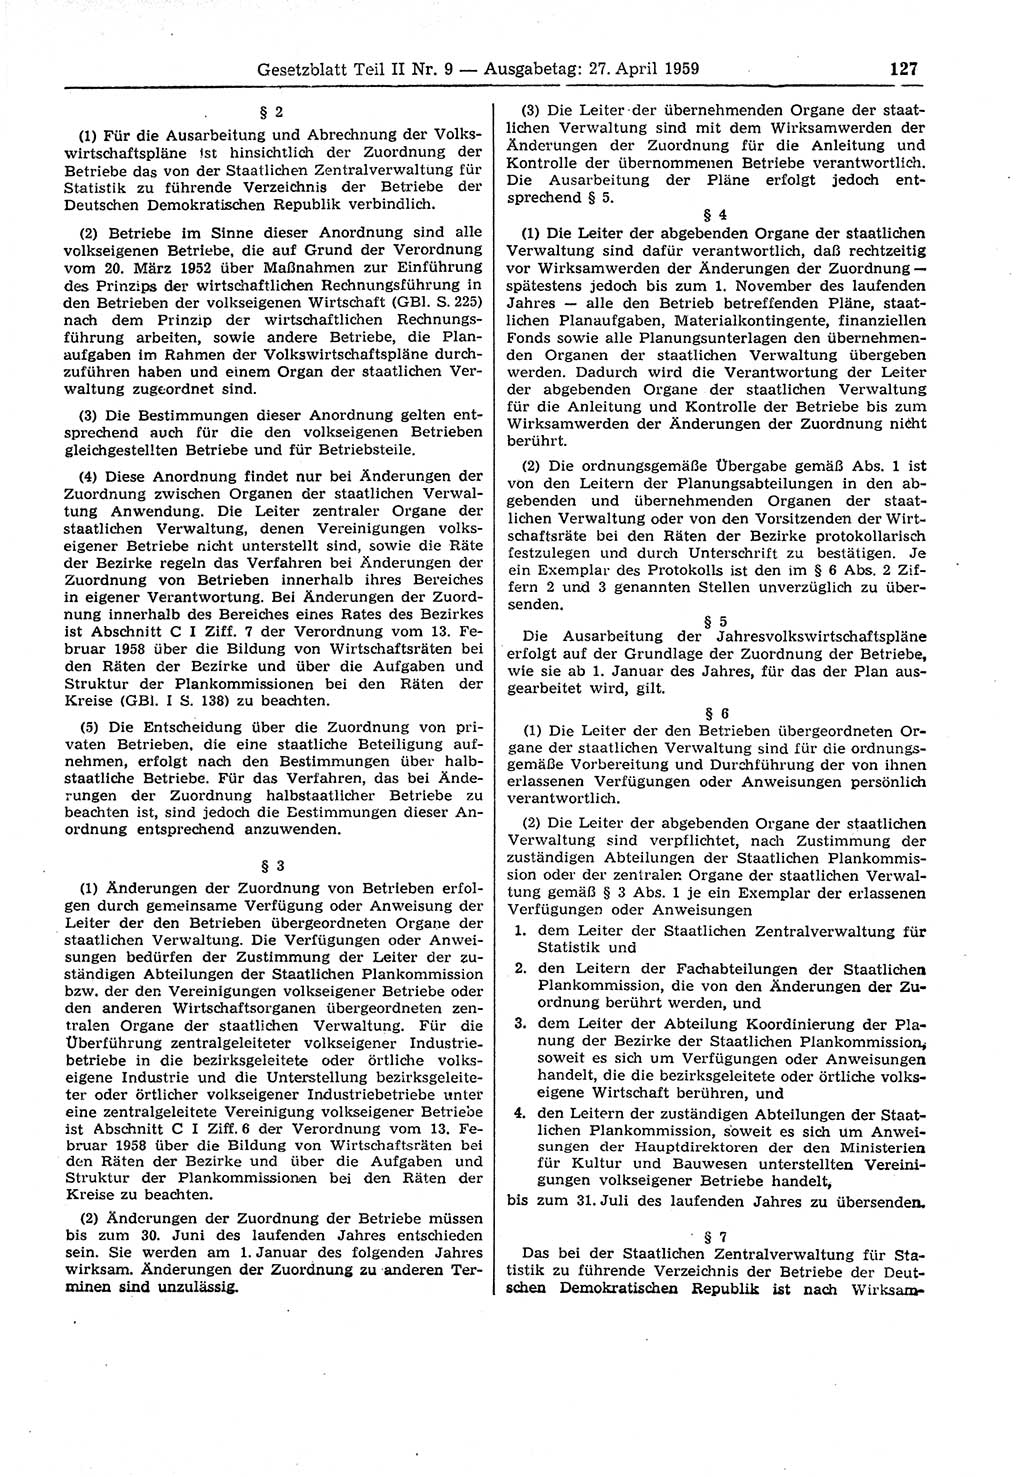 Gesetzblatt (GBl.) der Deutschen Demokratischen Republik (DDR) Teil ⅠⅠ 1959, Seite 127 (GBl. DDR ⅠⅠ 1959, S. 127)